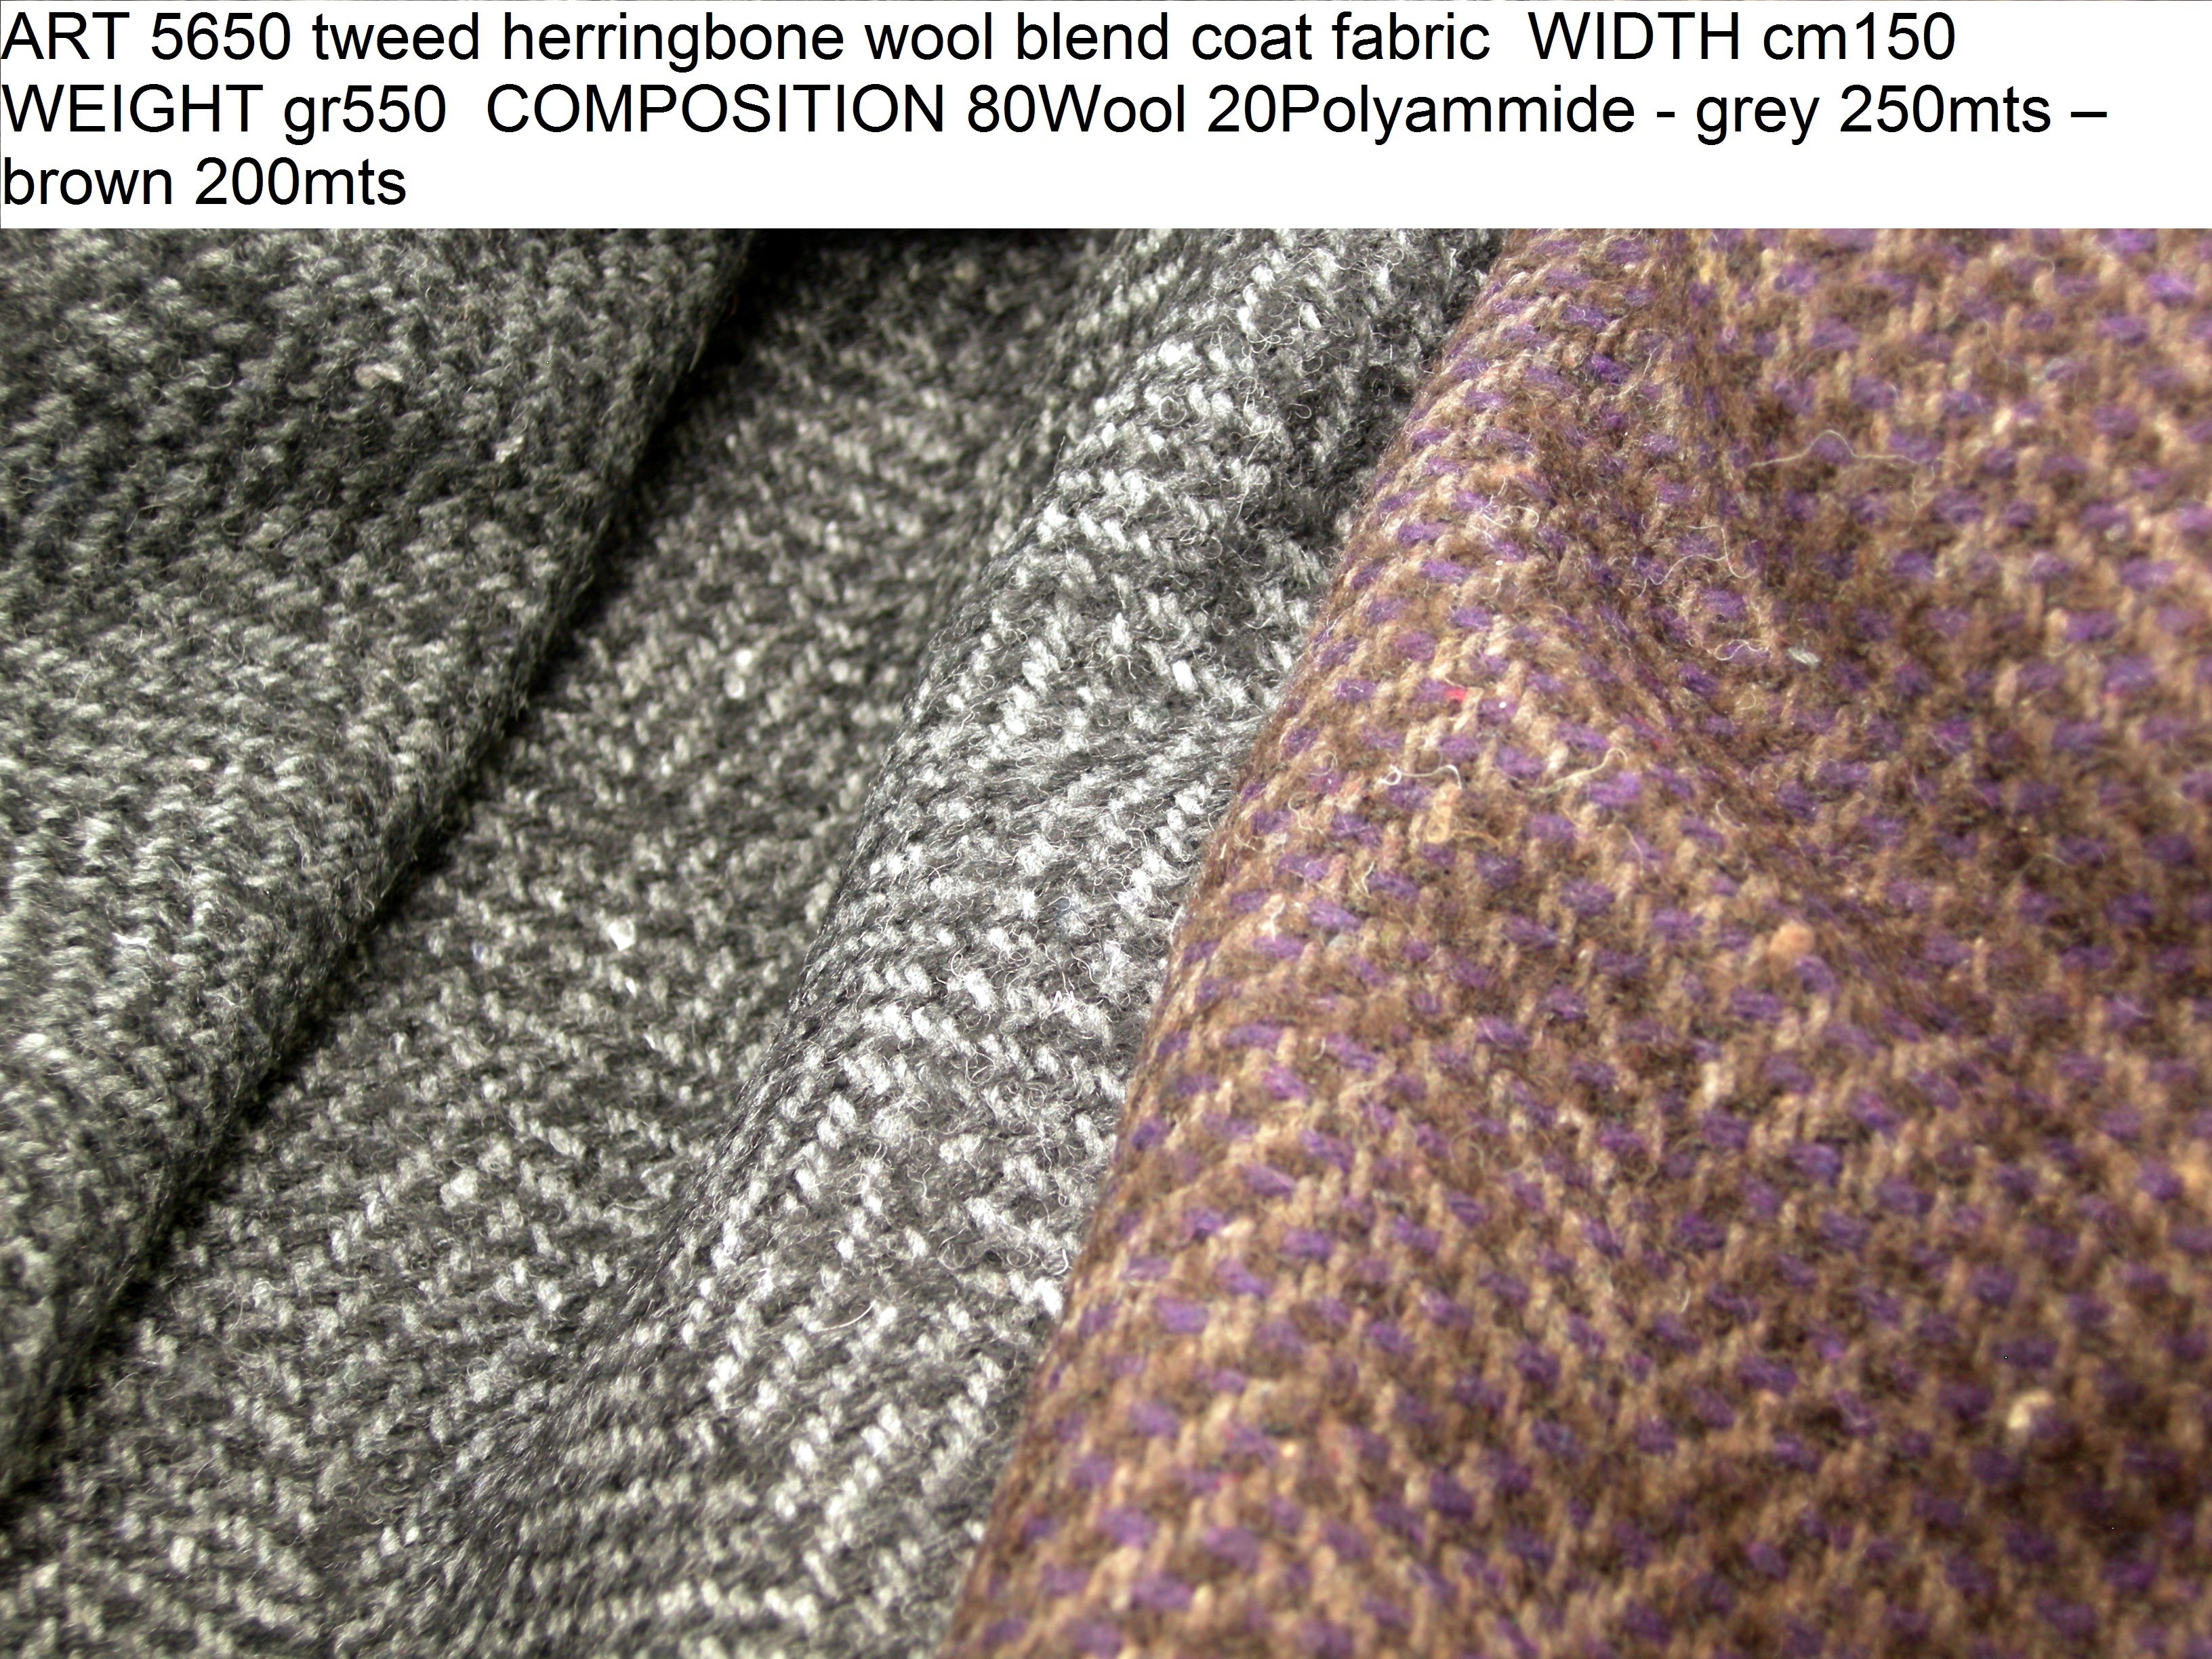 NEW Italian Wool Herringbone Design Fabric Coat Jacket Material 